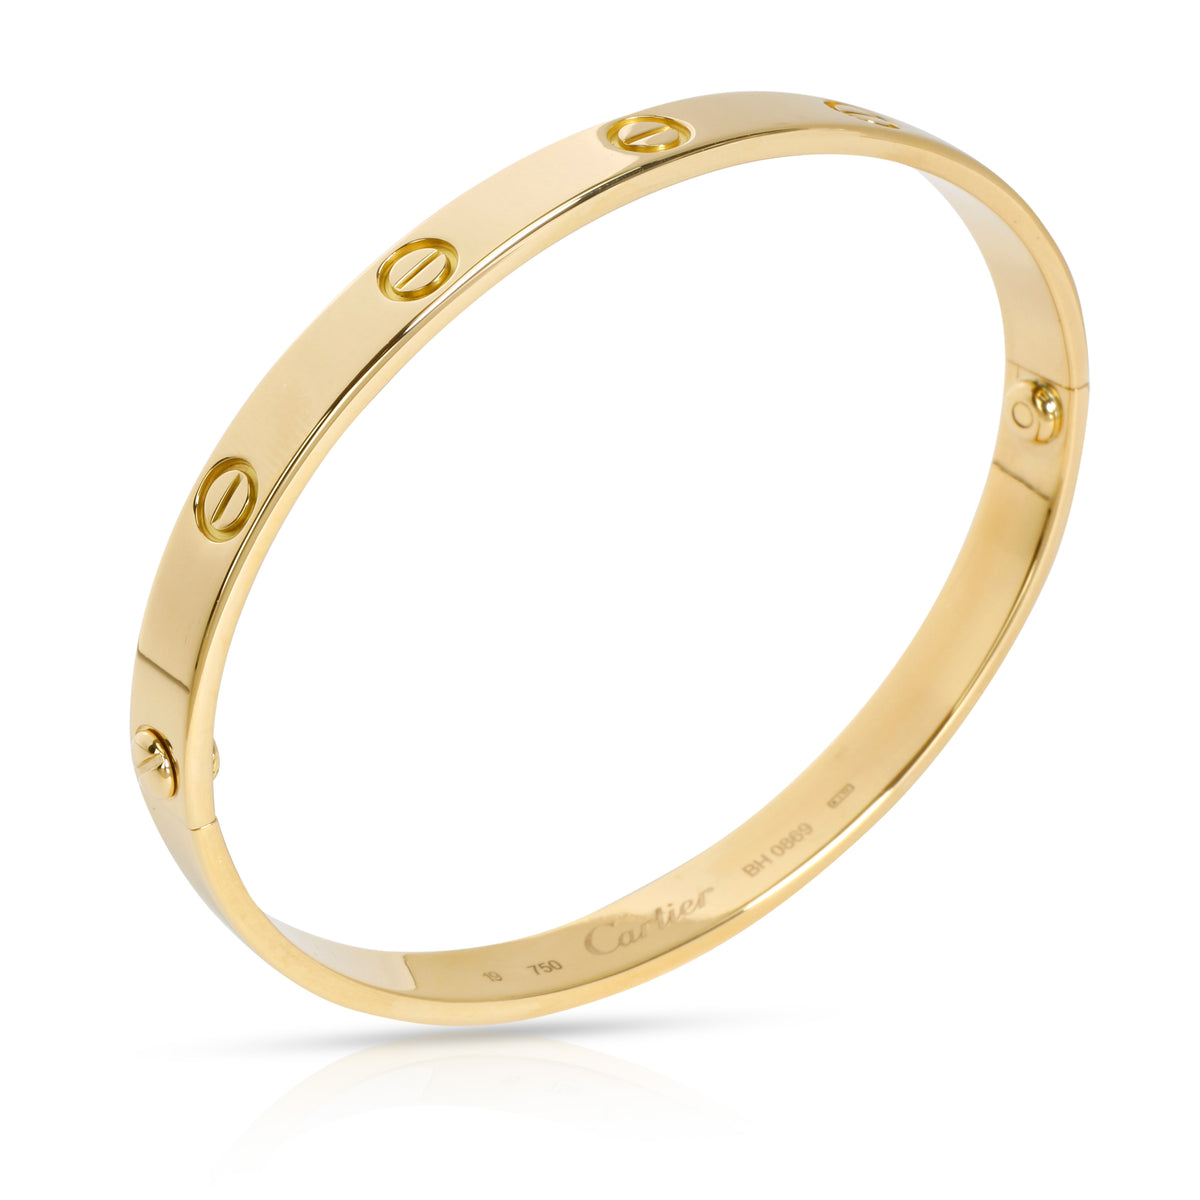 Cartier LOVE Bracelet in 18K Yellow Gold Size 19